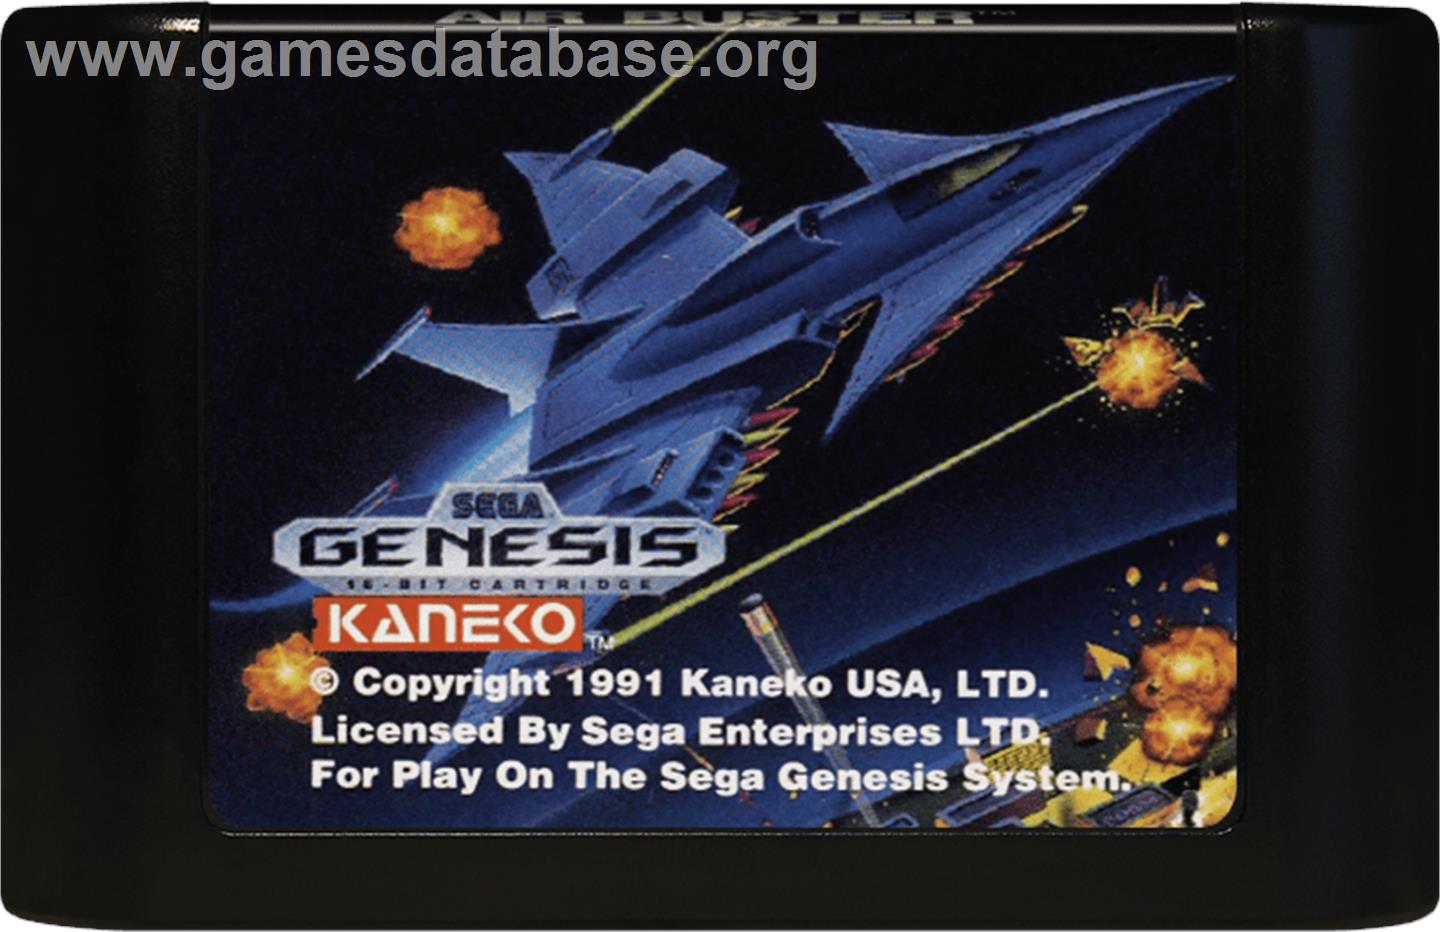 Air Buster - Sega Genesis - Artwork - Cartridge